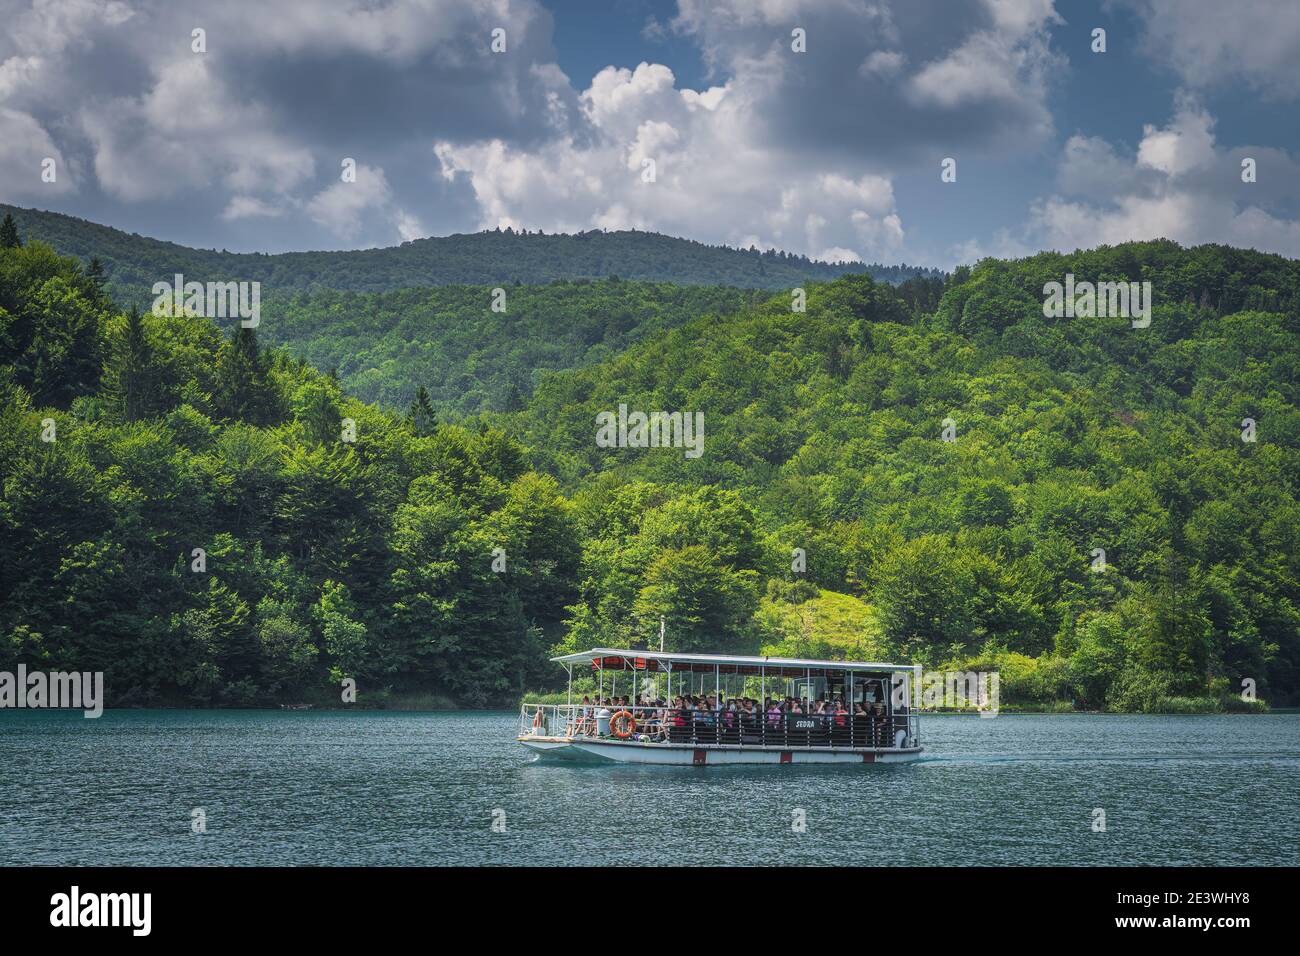 Plitvicka Jezera, Croatie, juillet 2019 Ferry avec des touristes sur un lac turquoise. Parc national des lacs de Plitvice Patrimoine mondial de l'UNESCO Banque D'Images